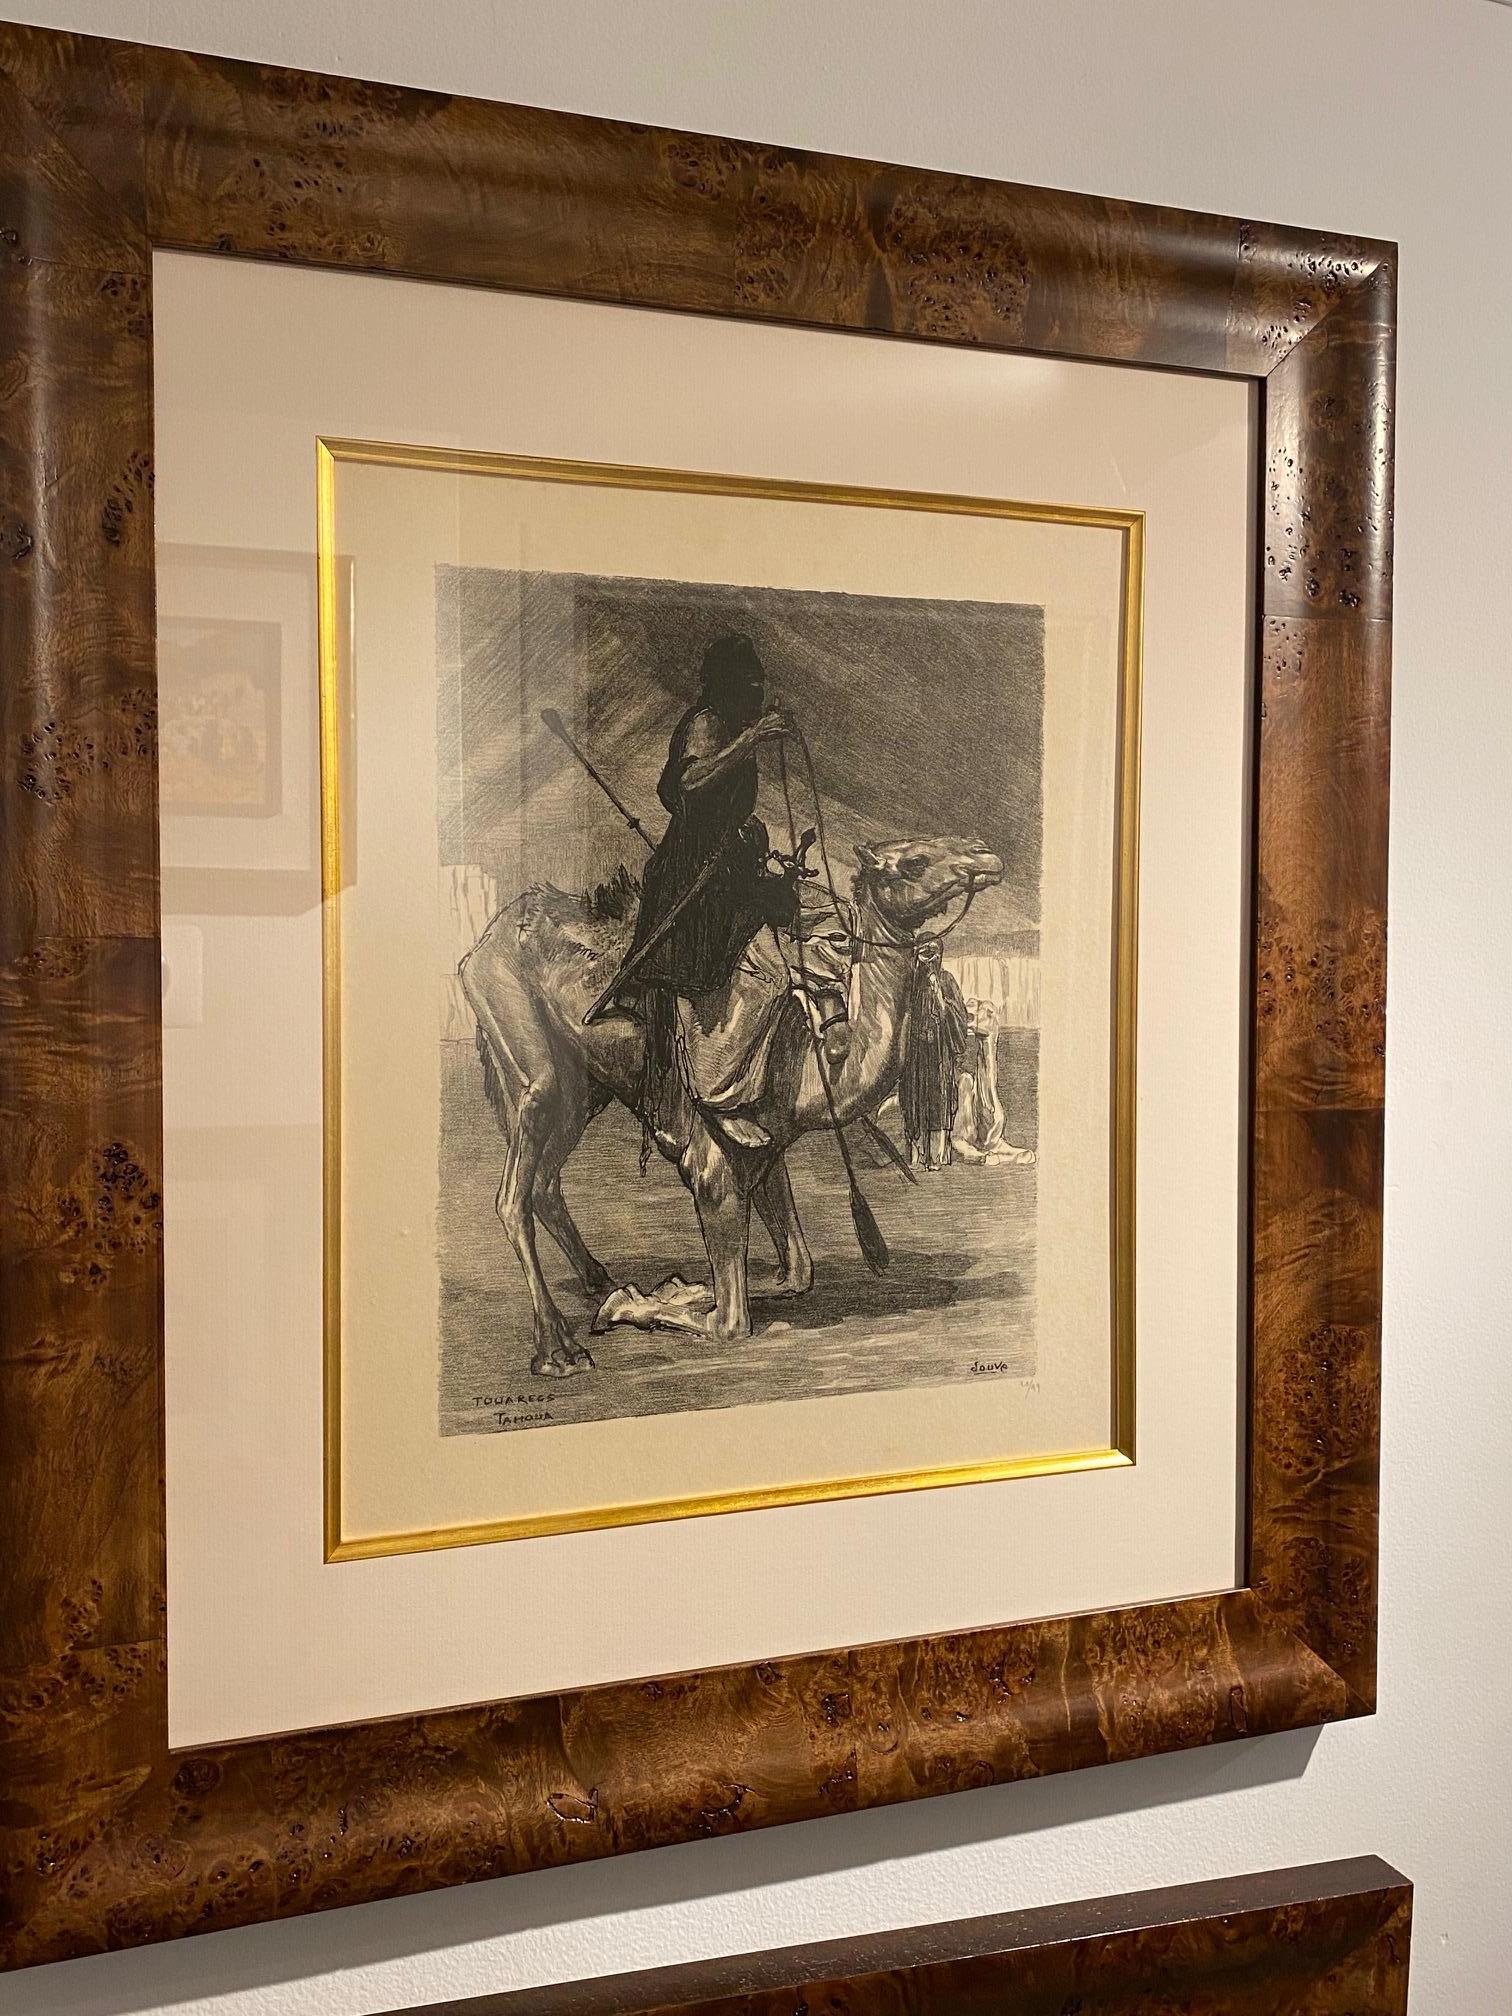 Gravure Art Déco représentant un chameau et son cavalier par l'artiste français Paul Jouve intitulée Touareg.

Signature : P. Jouve